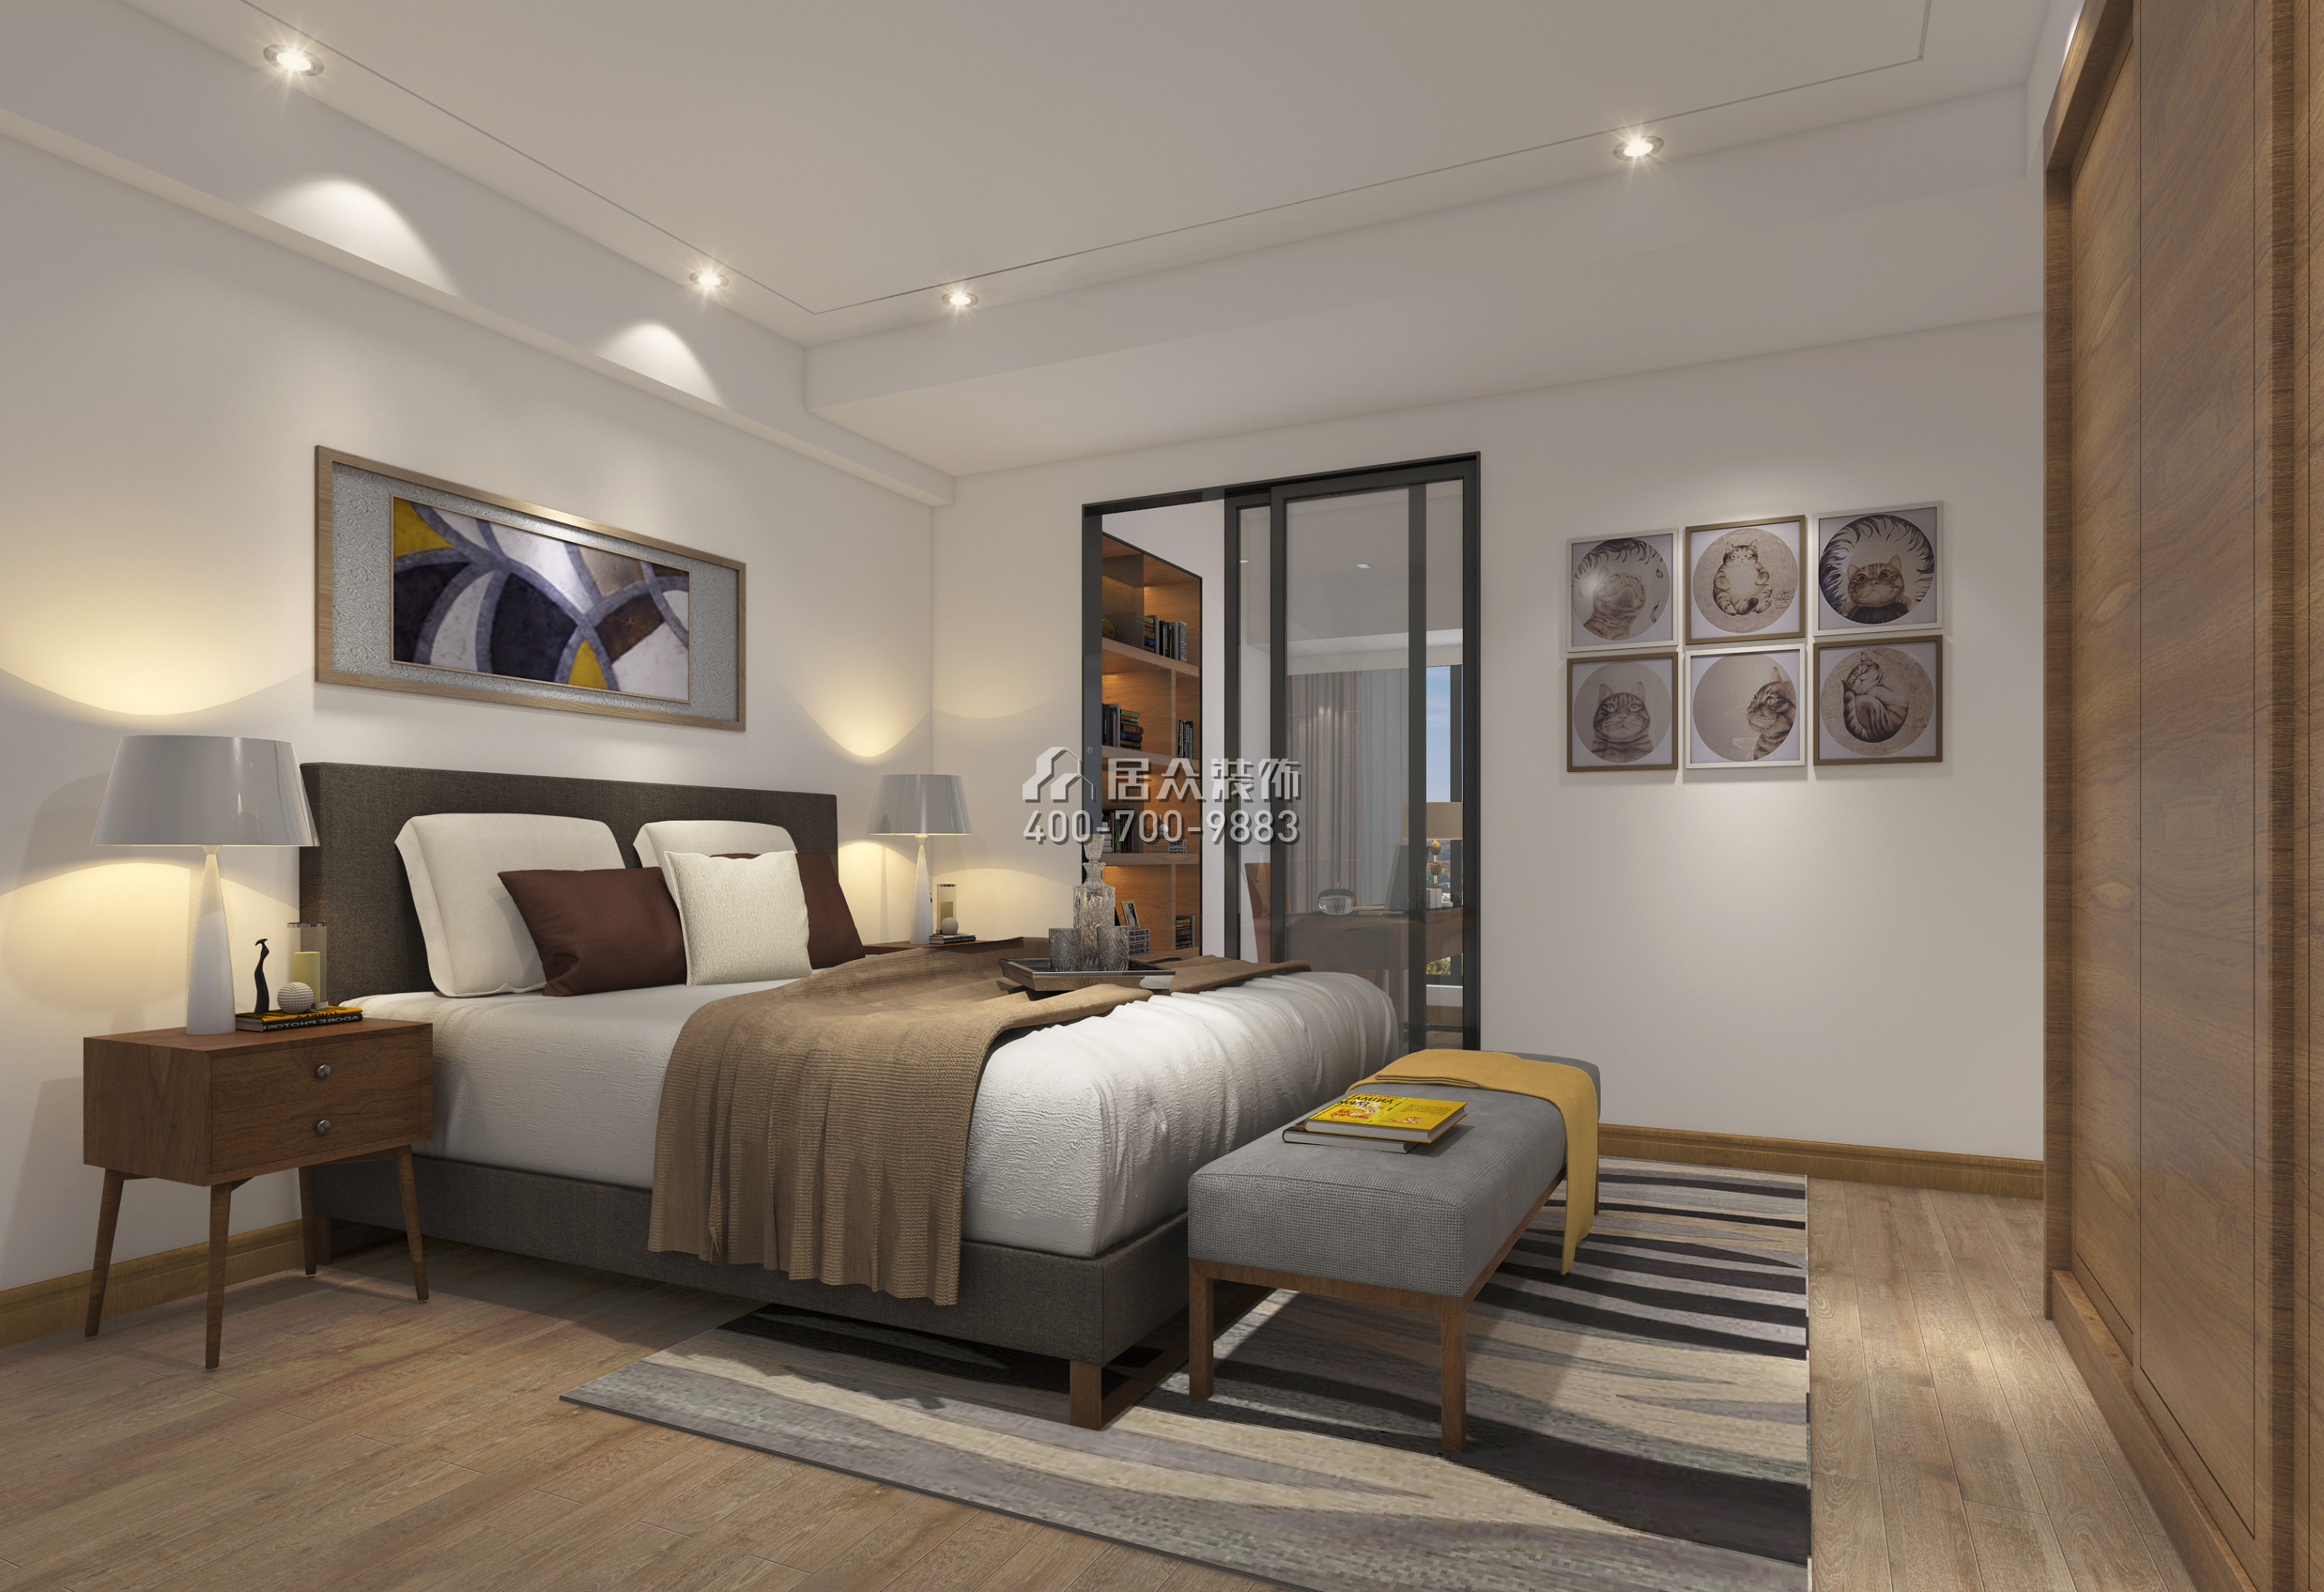 新世界商務中心170平方米現代簡約風格平層戶型臥室裝修效果圖